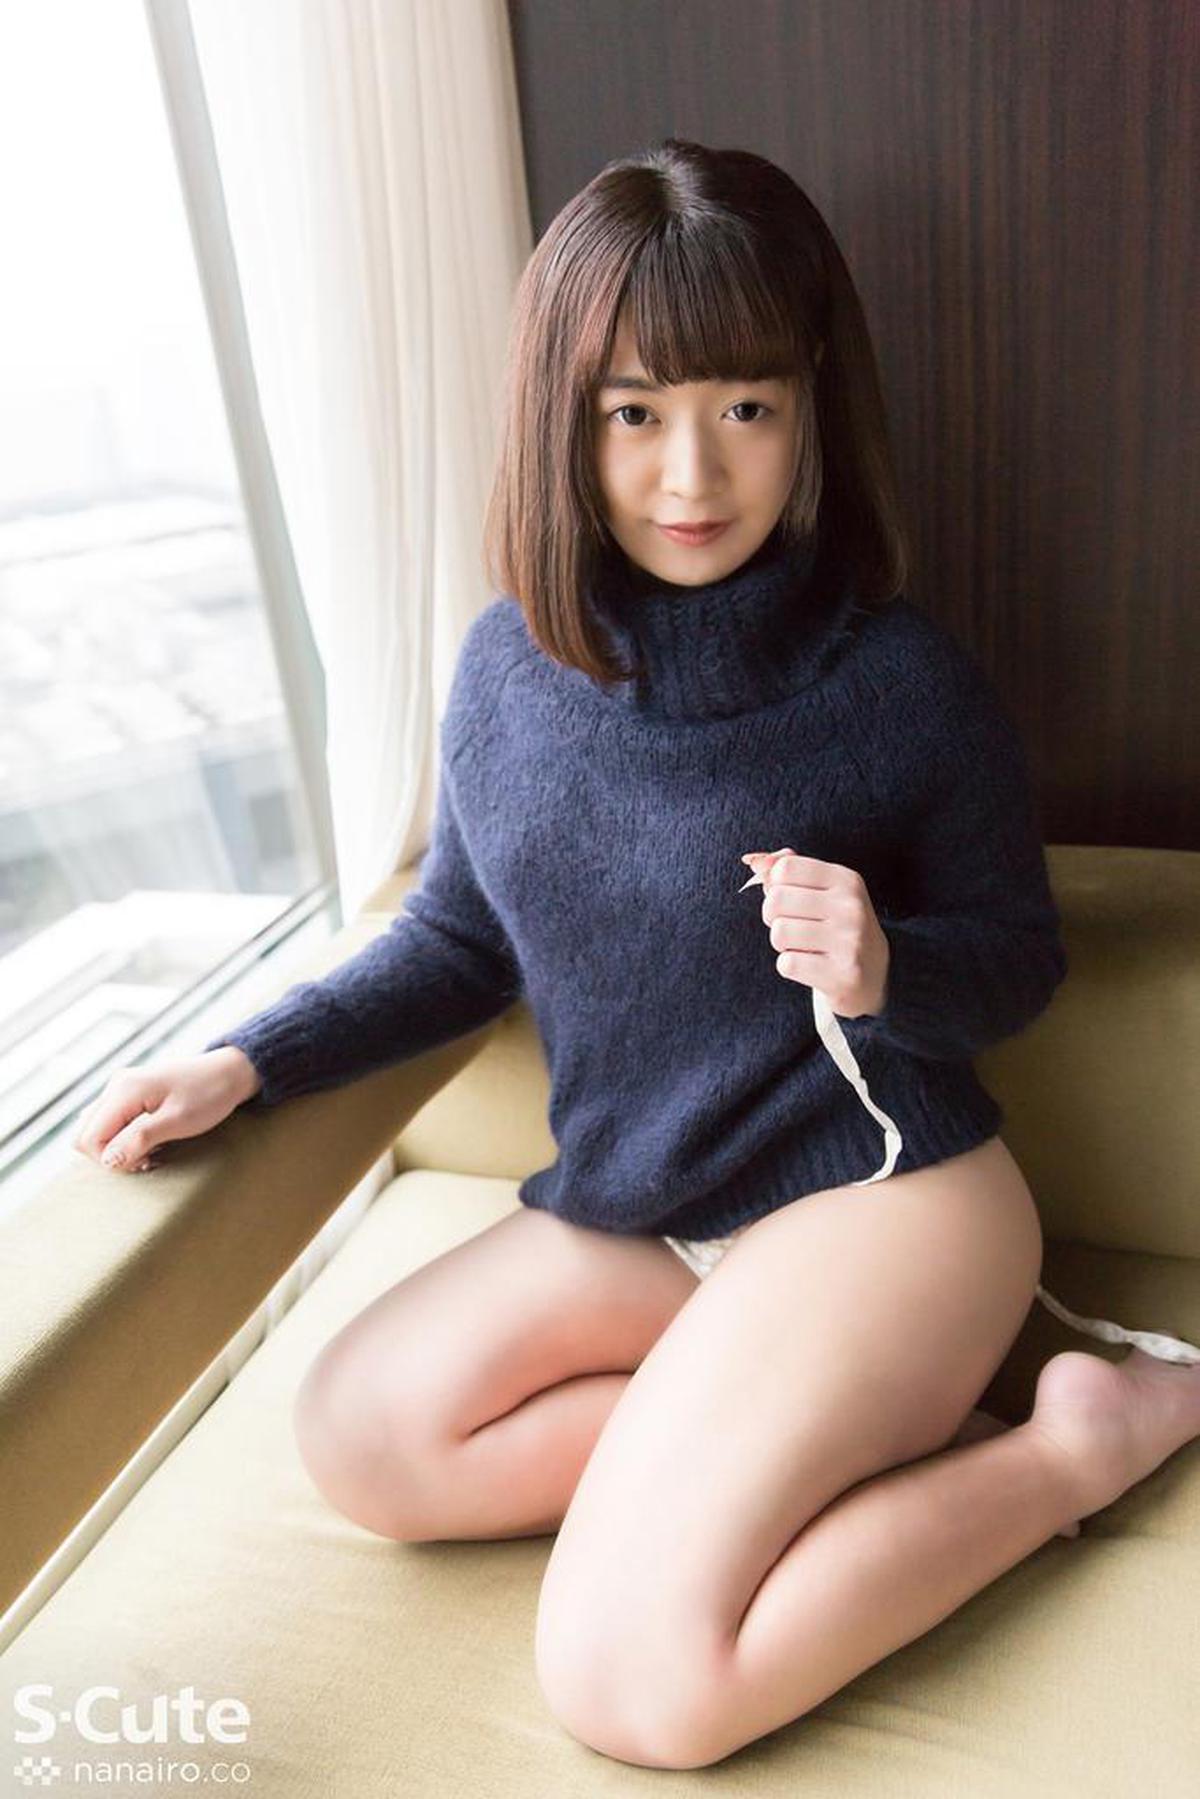 s-cute-733_hikari_01 SEX / Hikari जो एक पारदर्शी गोरी चमड़ी वाली लड़की से प्यार करती है